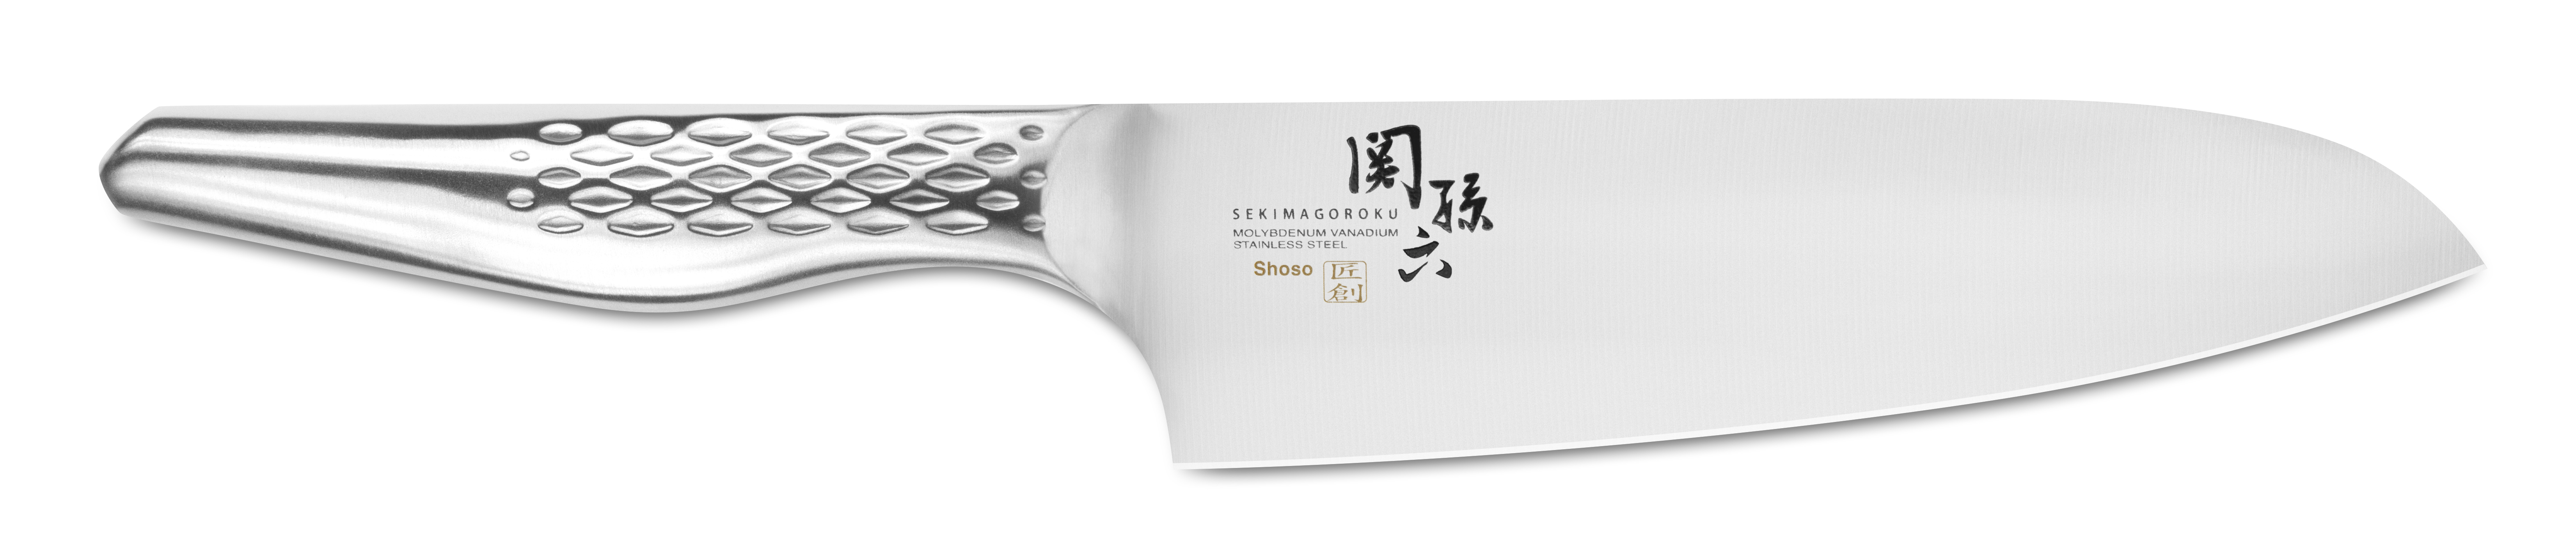 Seki Magoroku Shoso – Santoku 16,5 cm – AB-5156